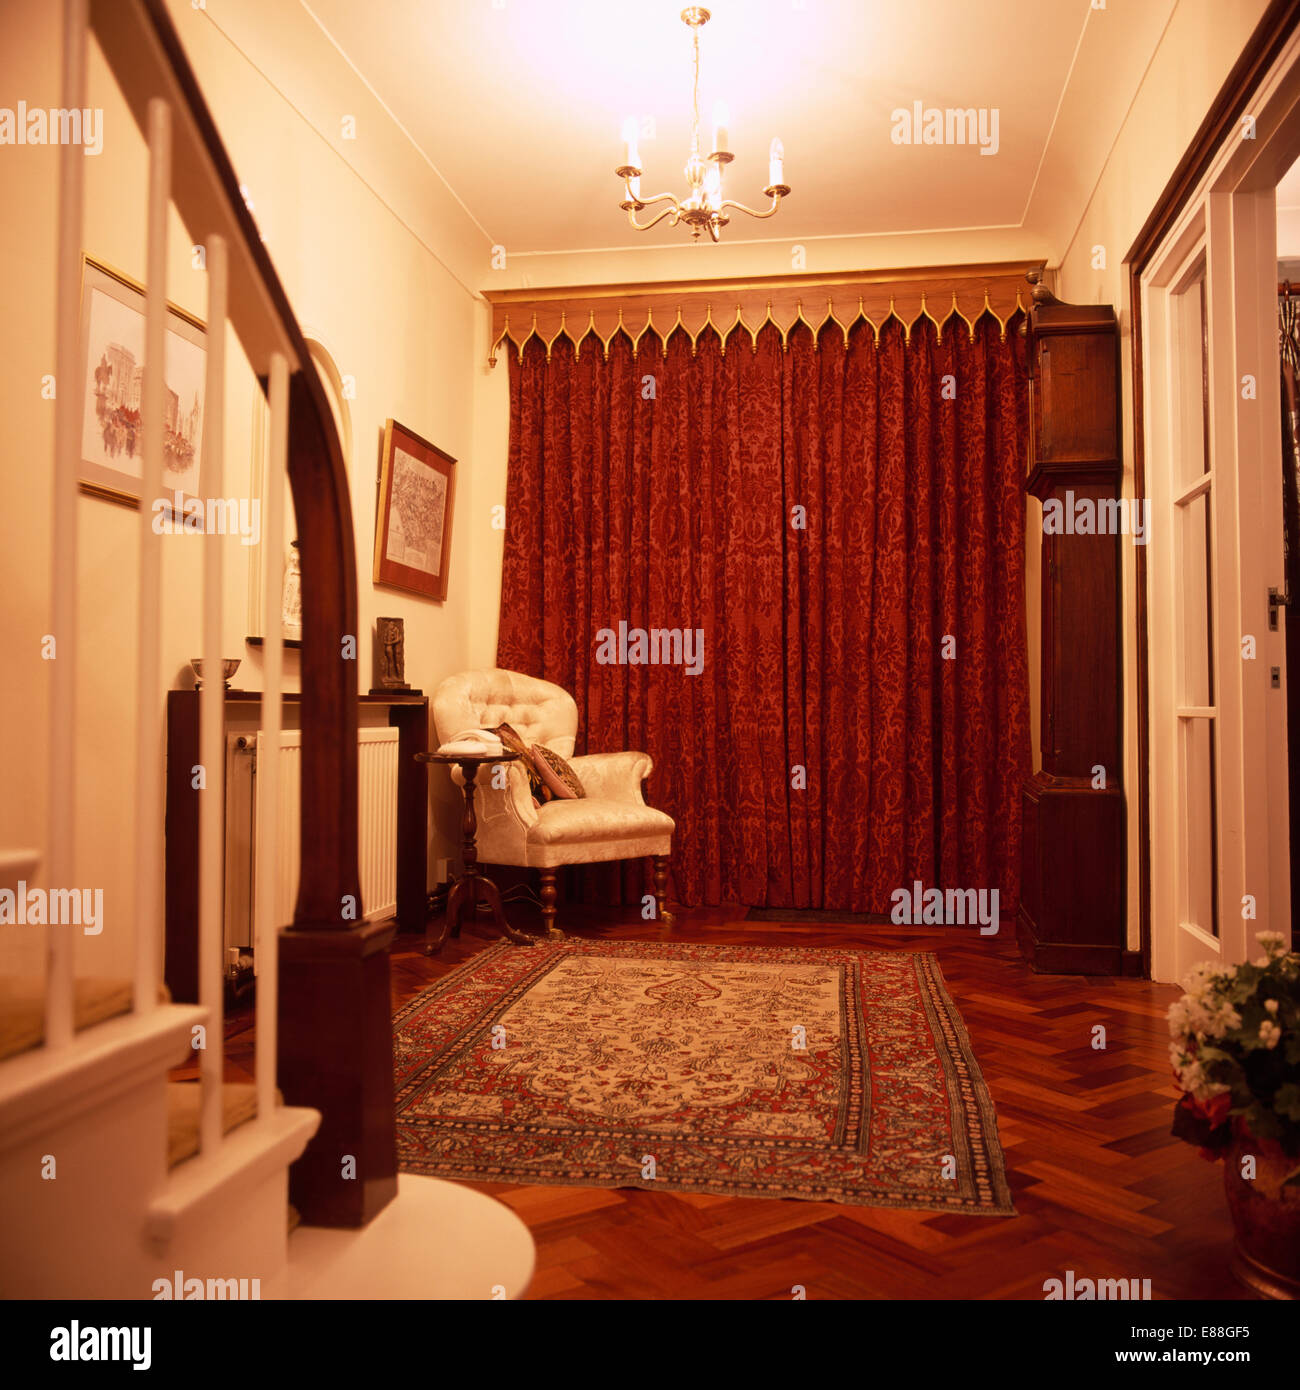 In legno in stile gotico mantovane sopra tende rosse nella sala tradizionale con poltrona e grande tappeto sul pavimento in parquet Foto Stock